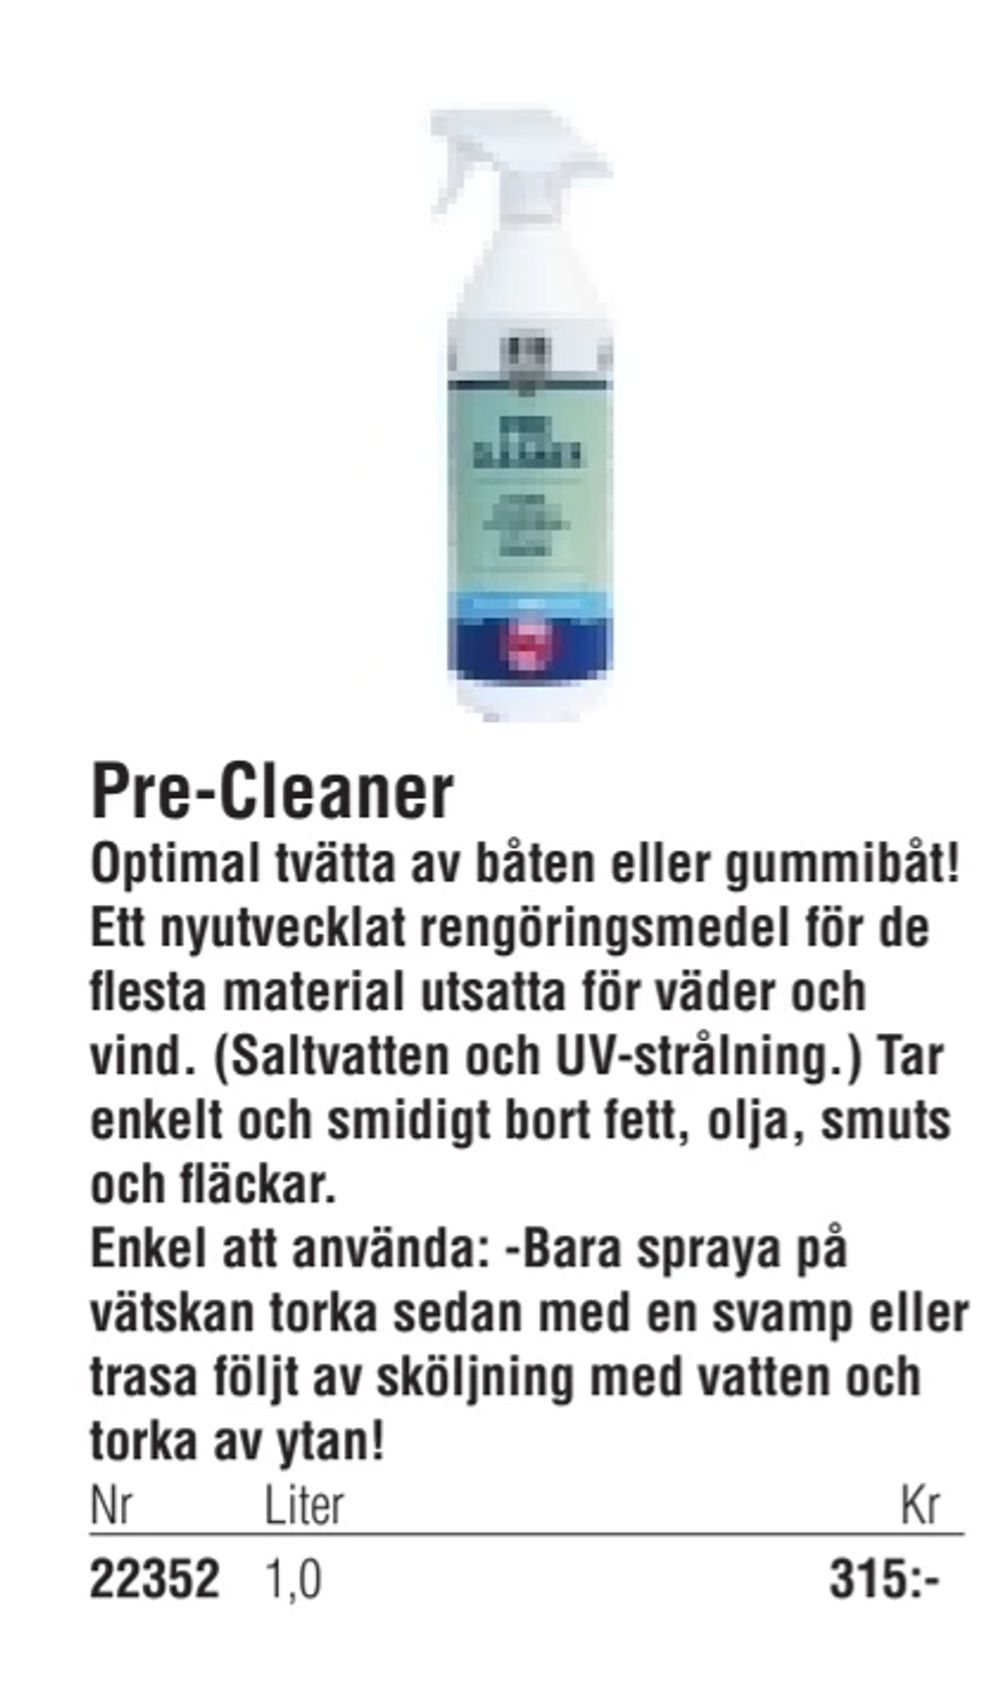 Erbjudanden på Pre-Cleaner från Erlandsons Brygga för 315 kr